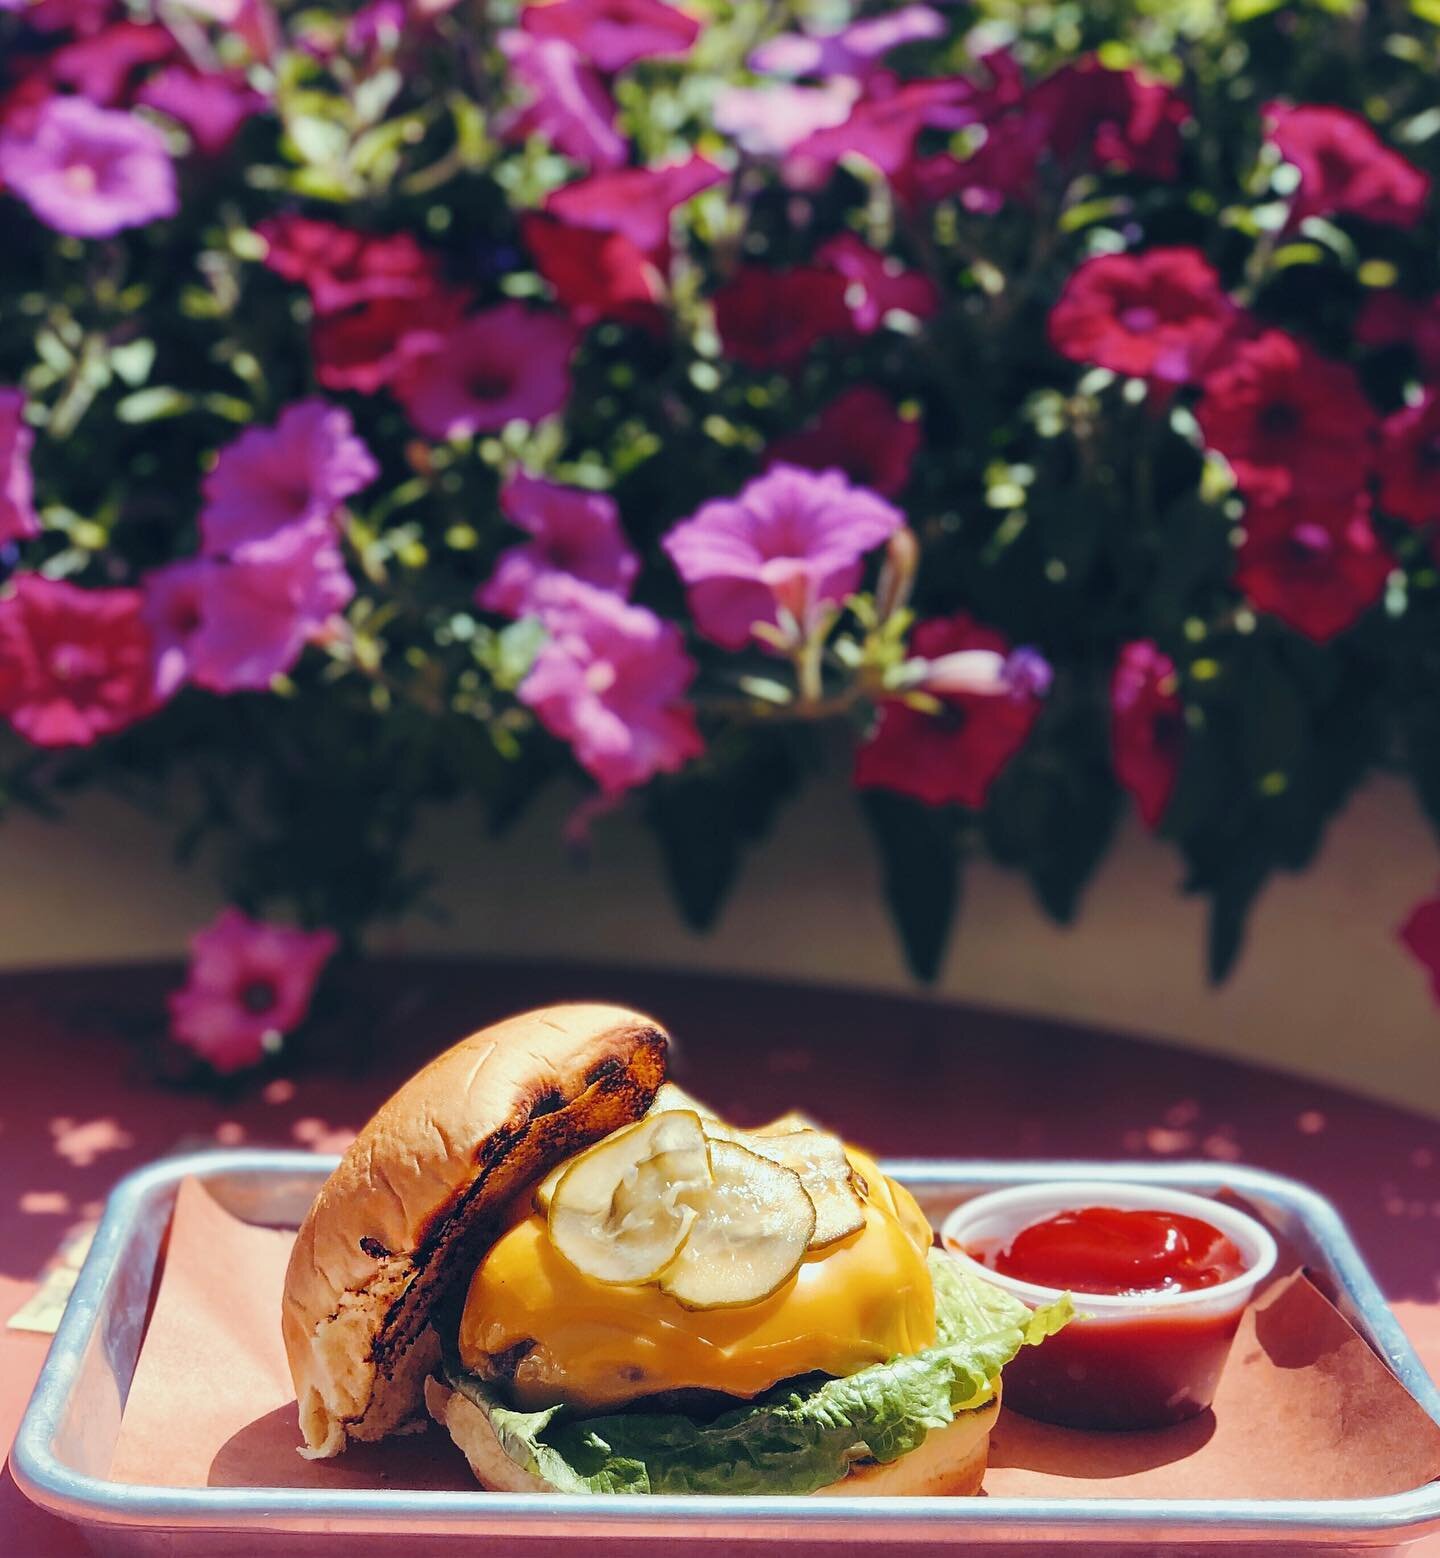 Cheeseburger in paradise 😋🤤
.
.
.
#otbbk #cheeseburger #williamsburg #brooklyn #11211 #eaterny #feedfeed #yeswilliamsburg #foodandwine #eeeeeats #f52grams #yum #summer #jimmybuffet